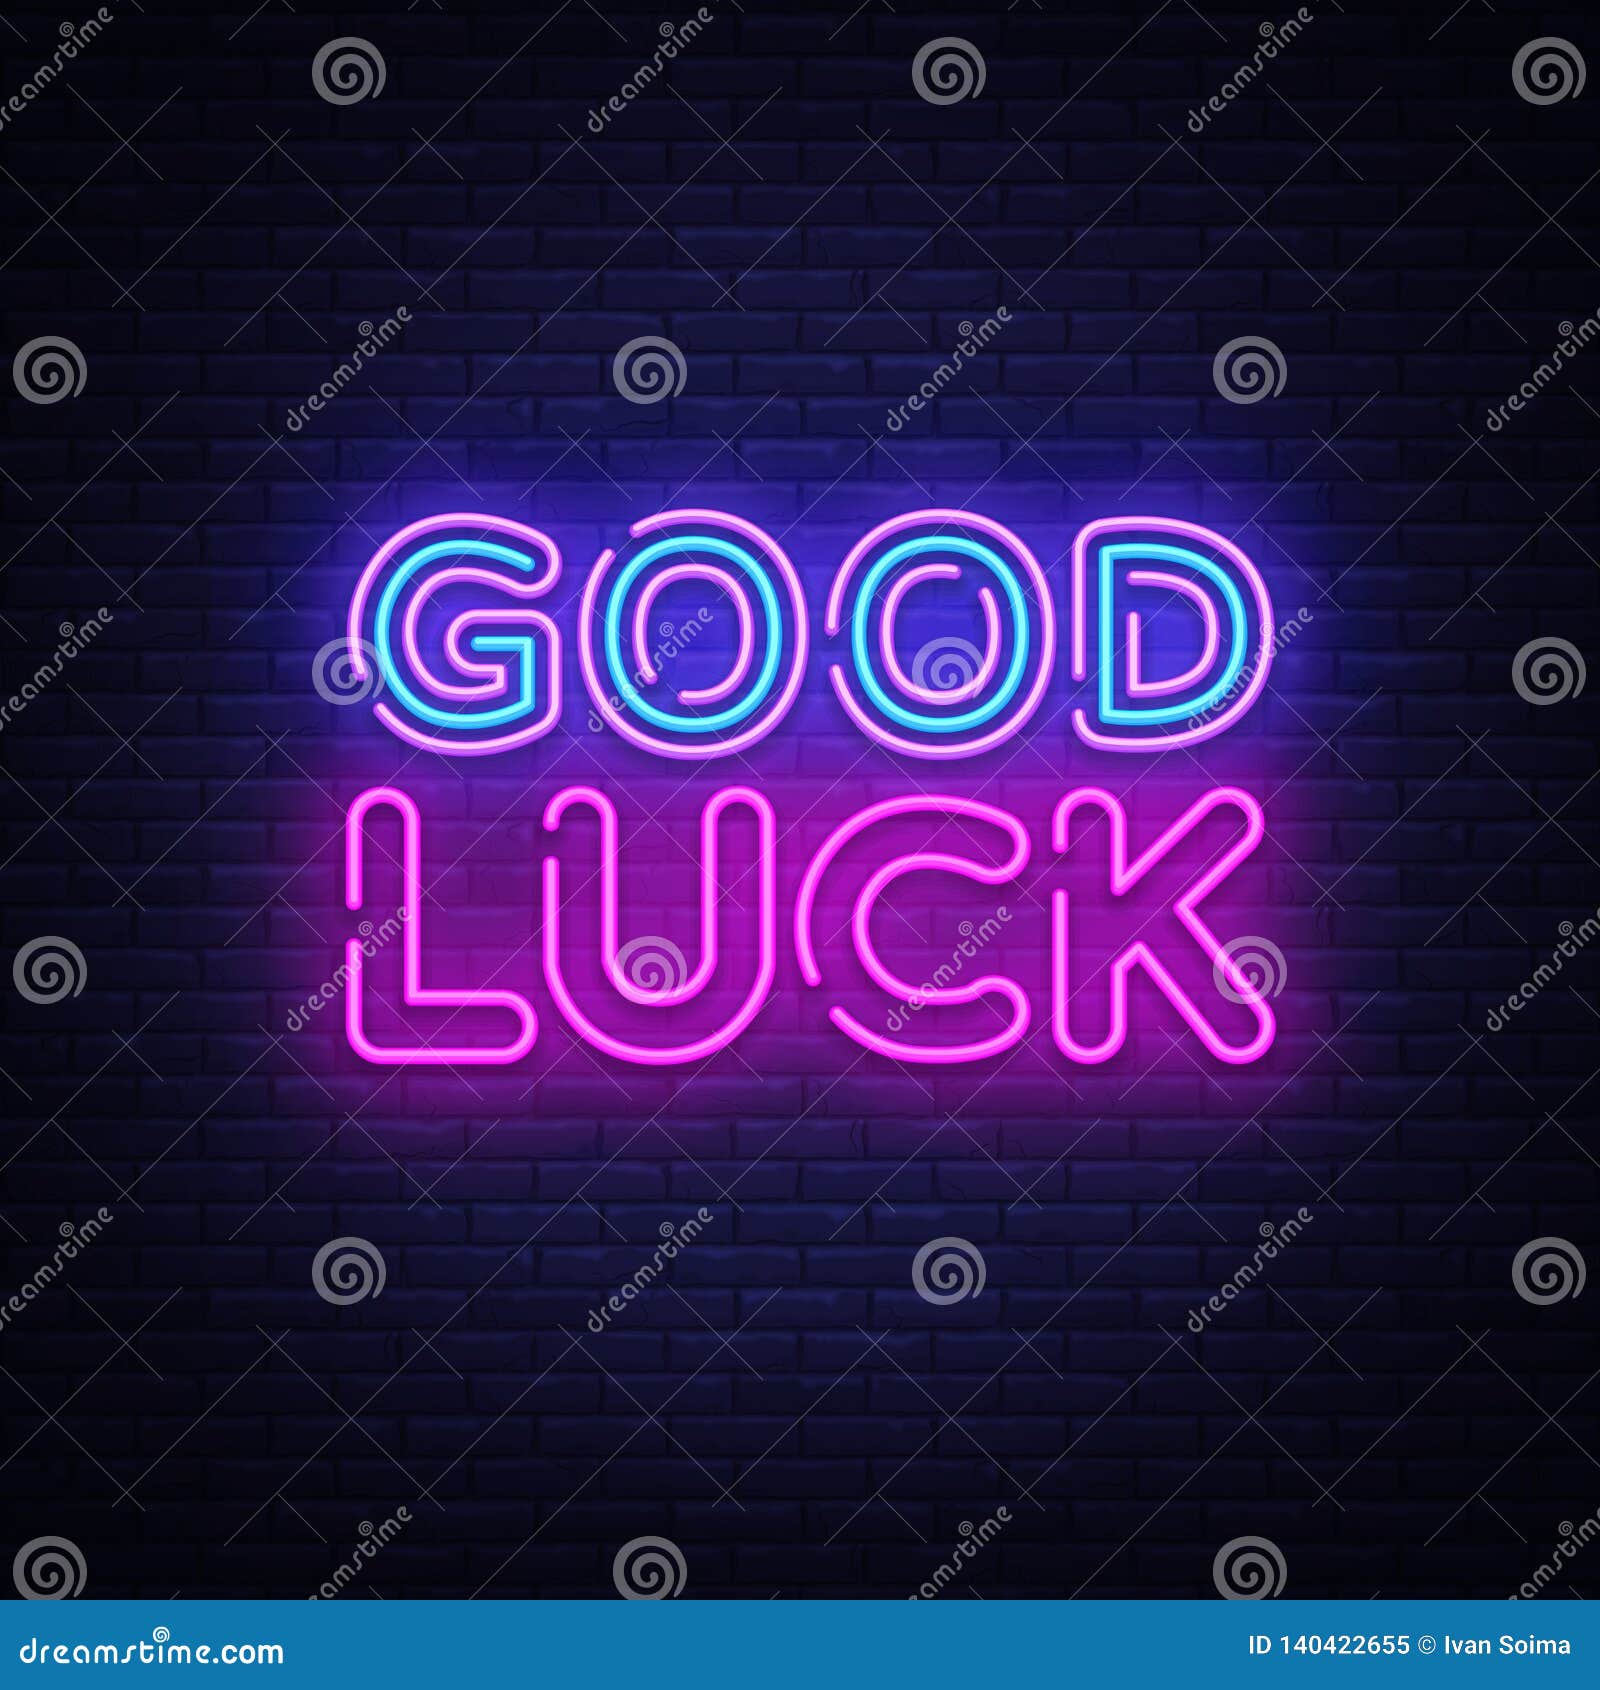 Good Luck Neon Sign Vector. Good Luck Design Template Neon Sign In Good Luck Banner Template